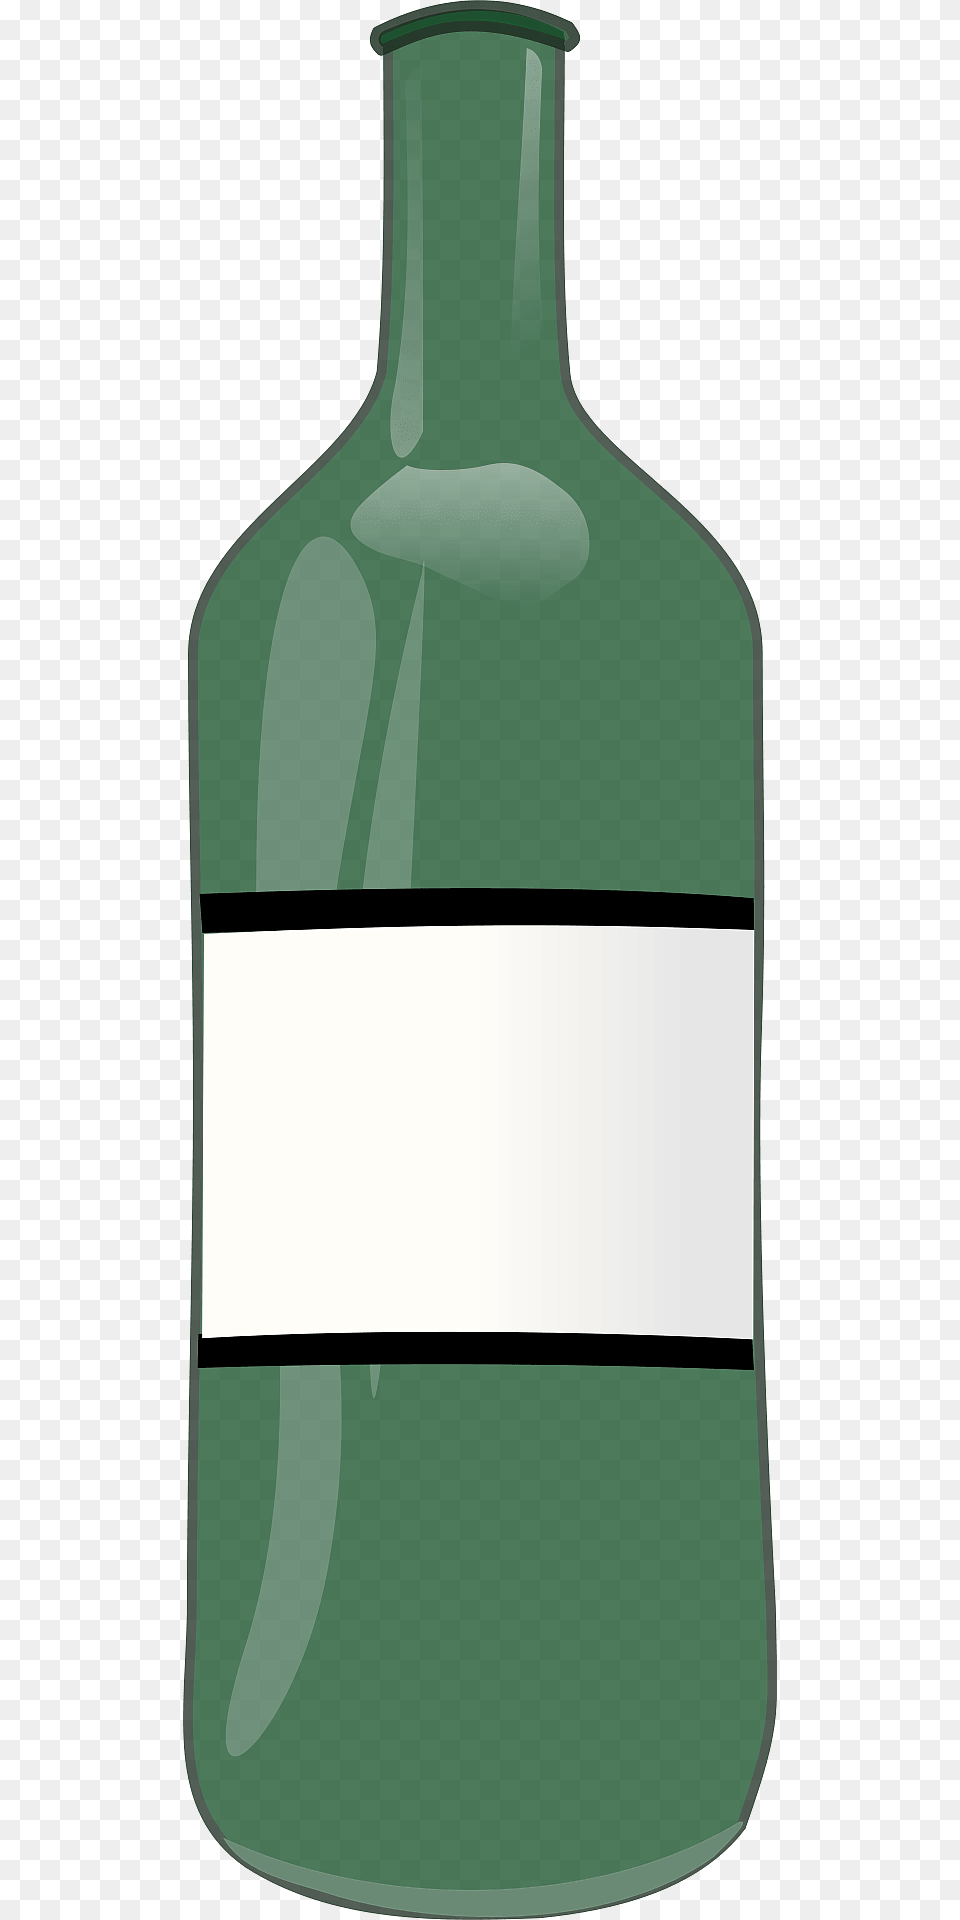 Wine Bottle Clipart, Jar, Pottery, Vase, Ink Bottle Free Transparent Png